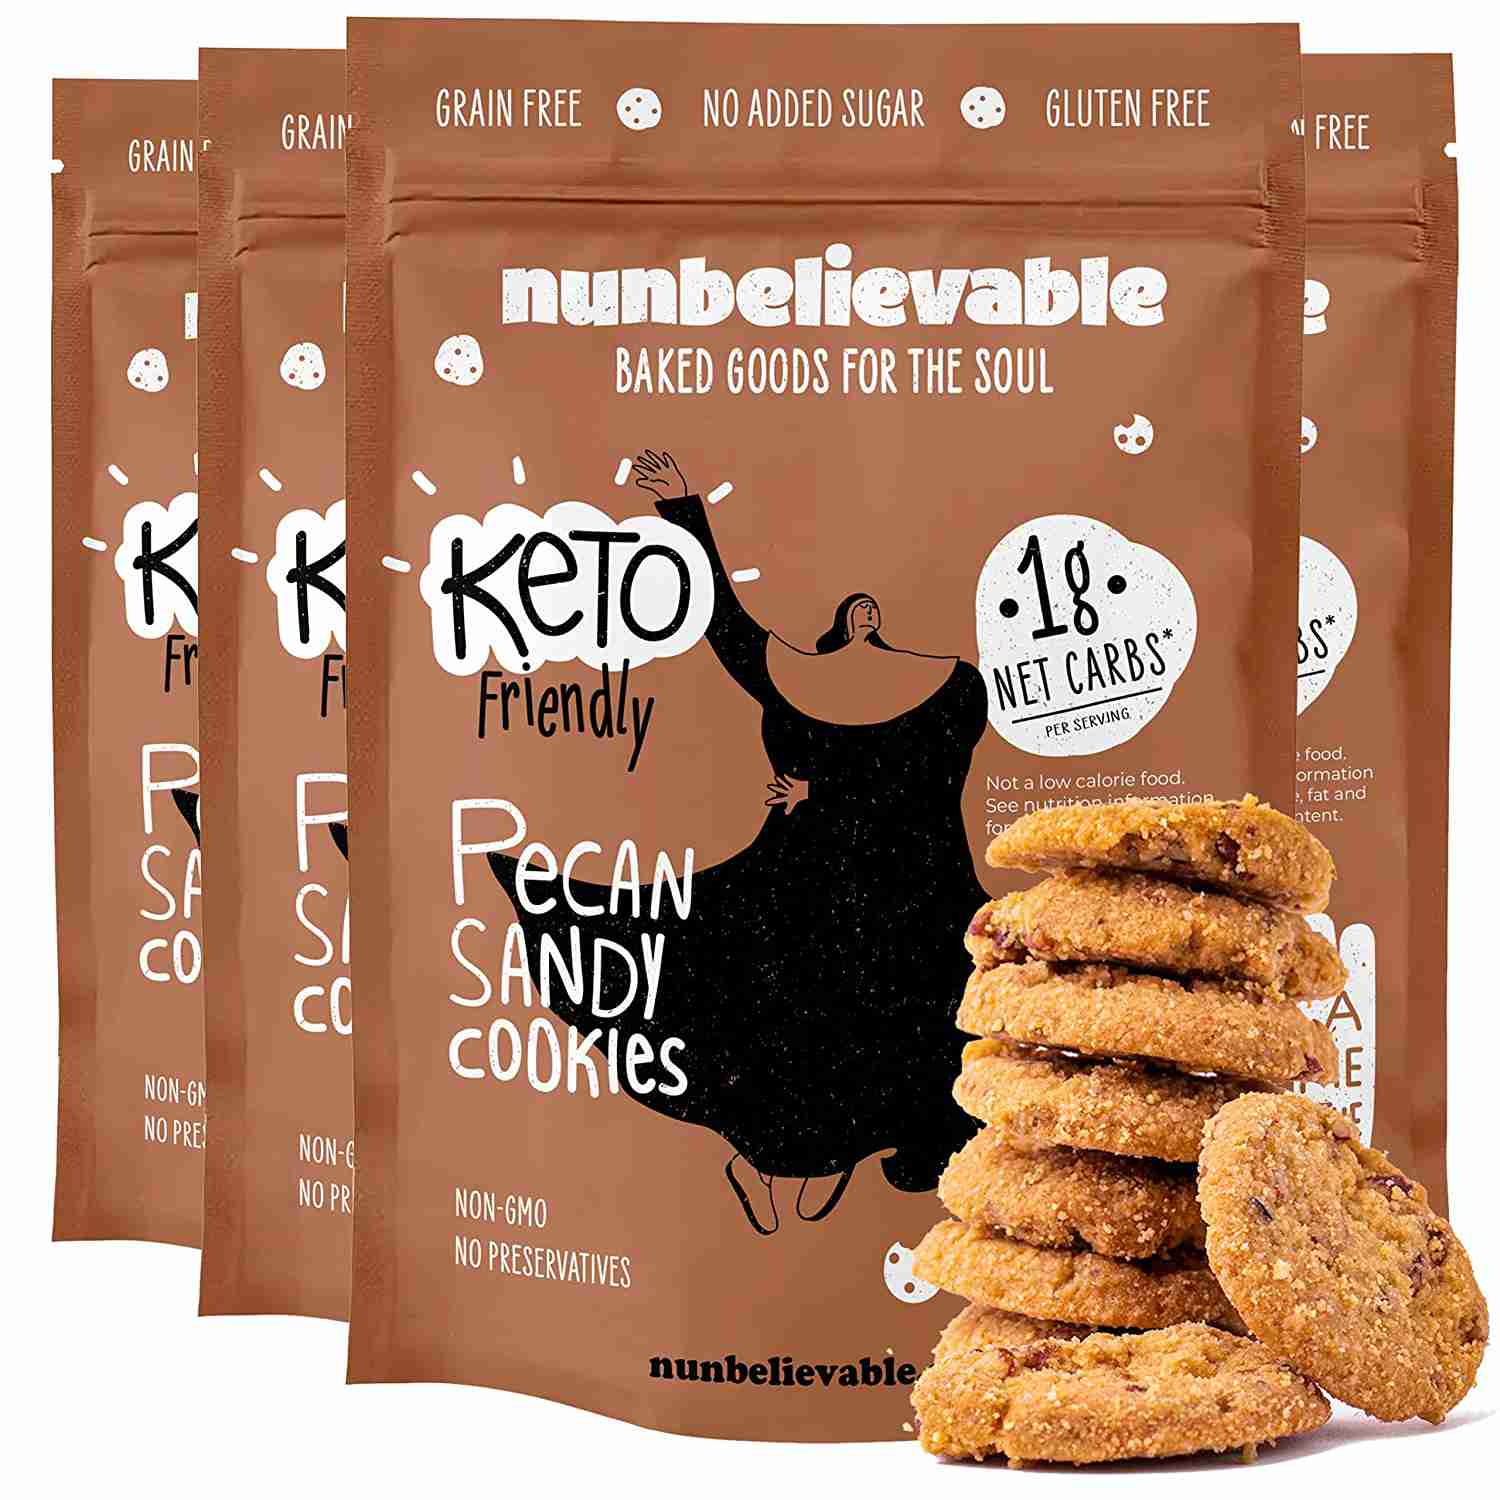 keto-cookies with cash back rebate